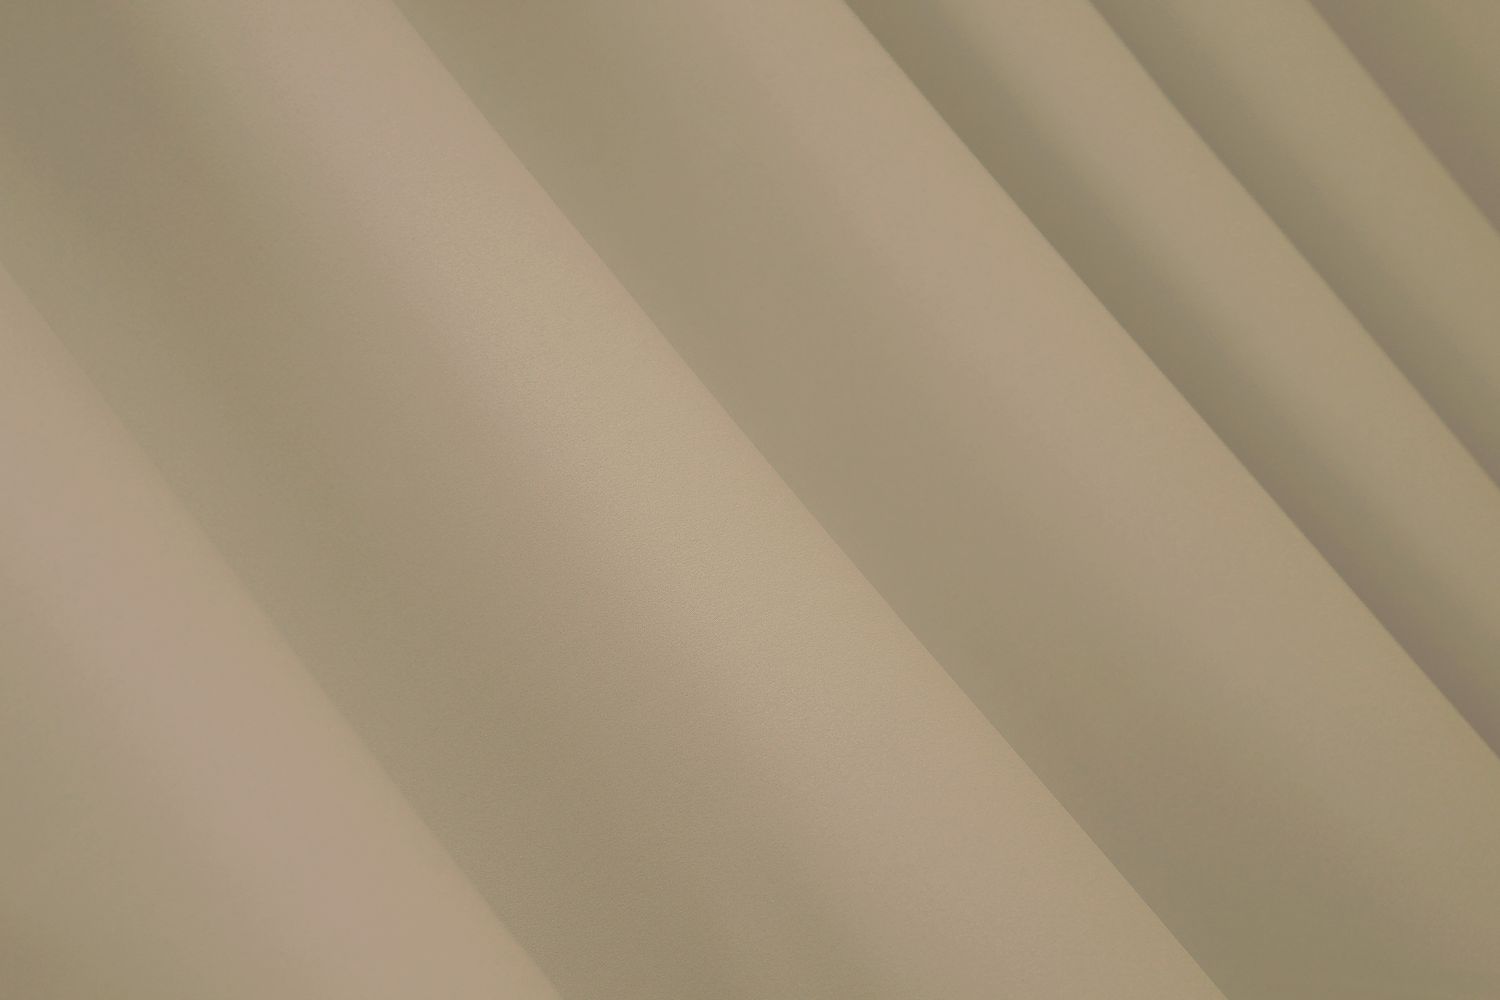 Комплект штор из ткани блэкаут, коллекция "Midnight" цвет кремовый 1222ш, Кремовый, Комплект штор (2 шт. 1,0х2,9 м.), Классические, Длинные, 1 м., 2,9 м., 100, 290, 1,5 - 2 м., В комплекте 2 шт., Тесьма